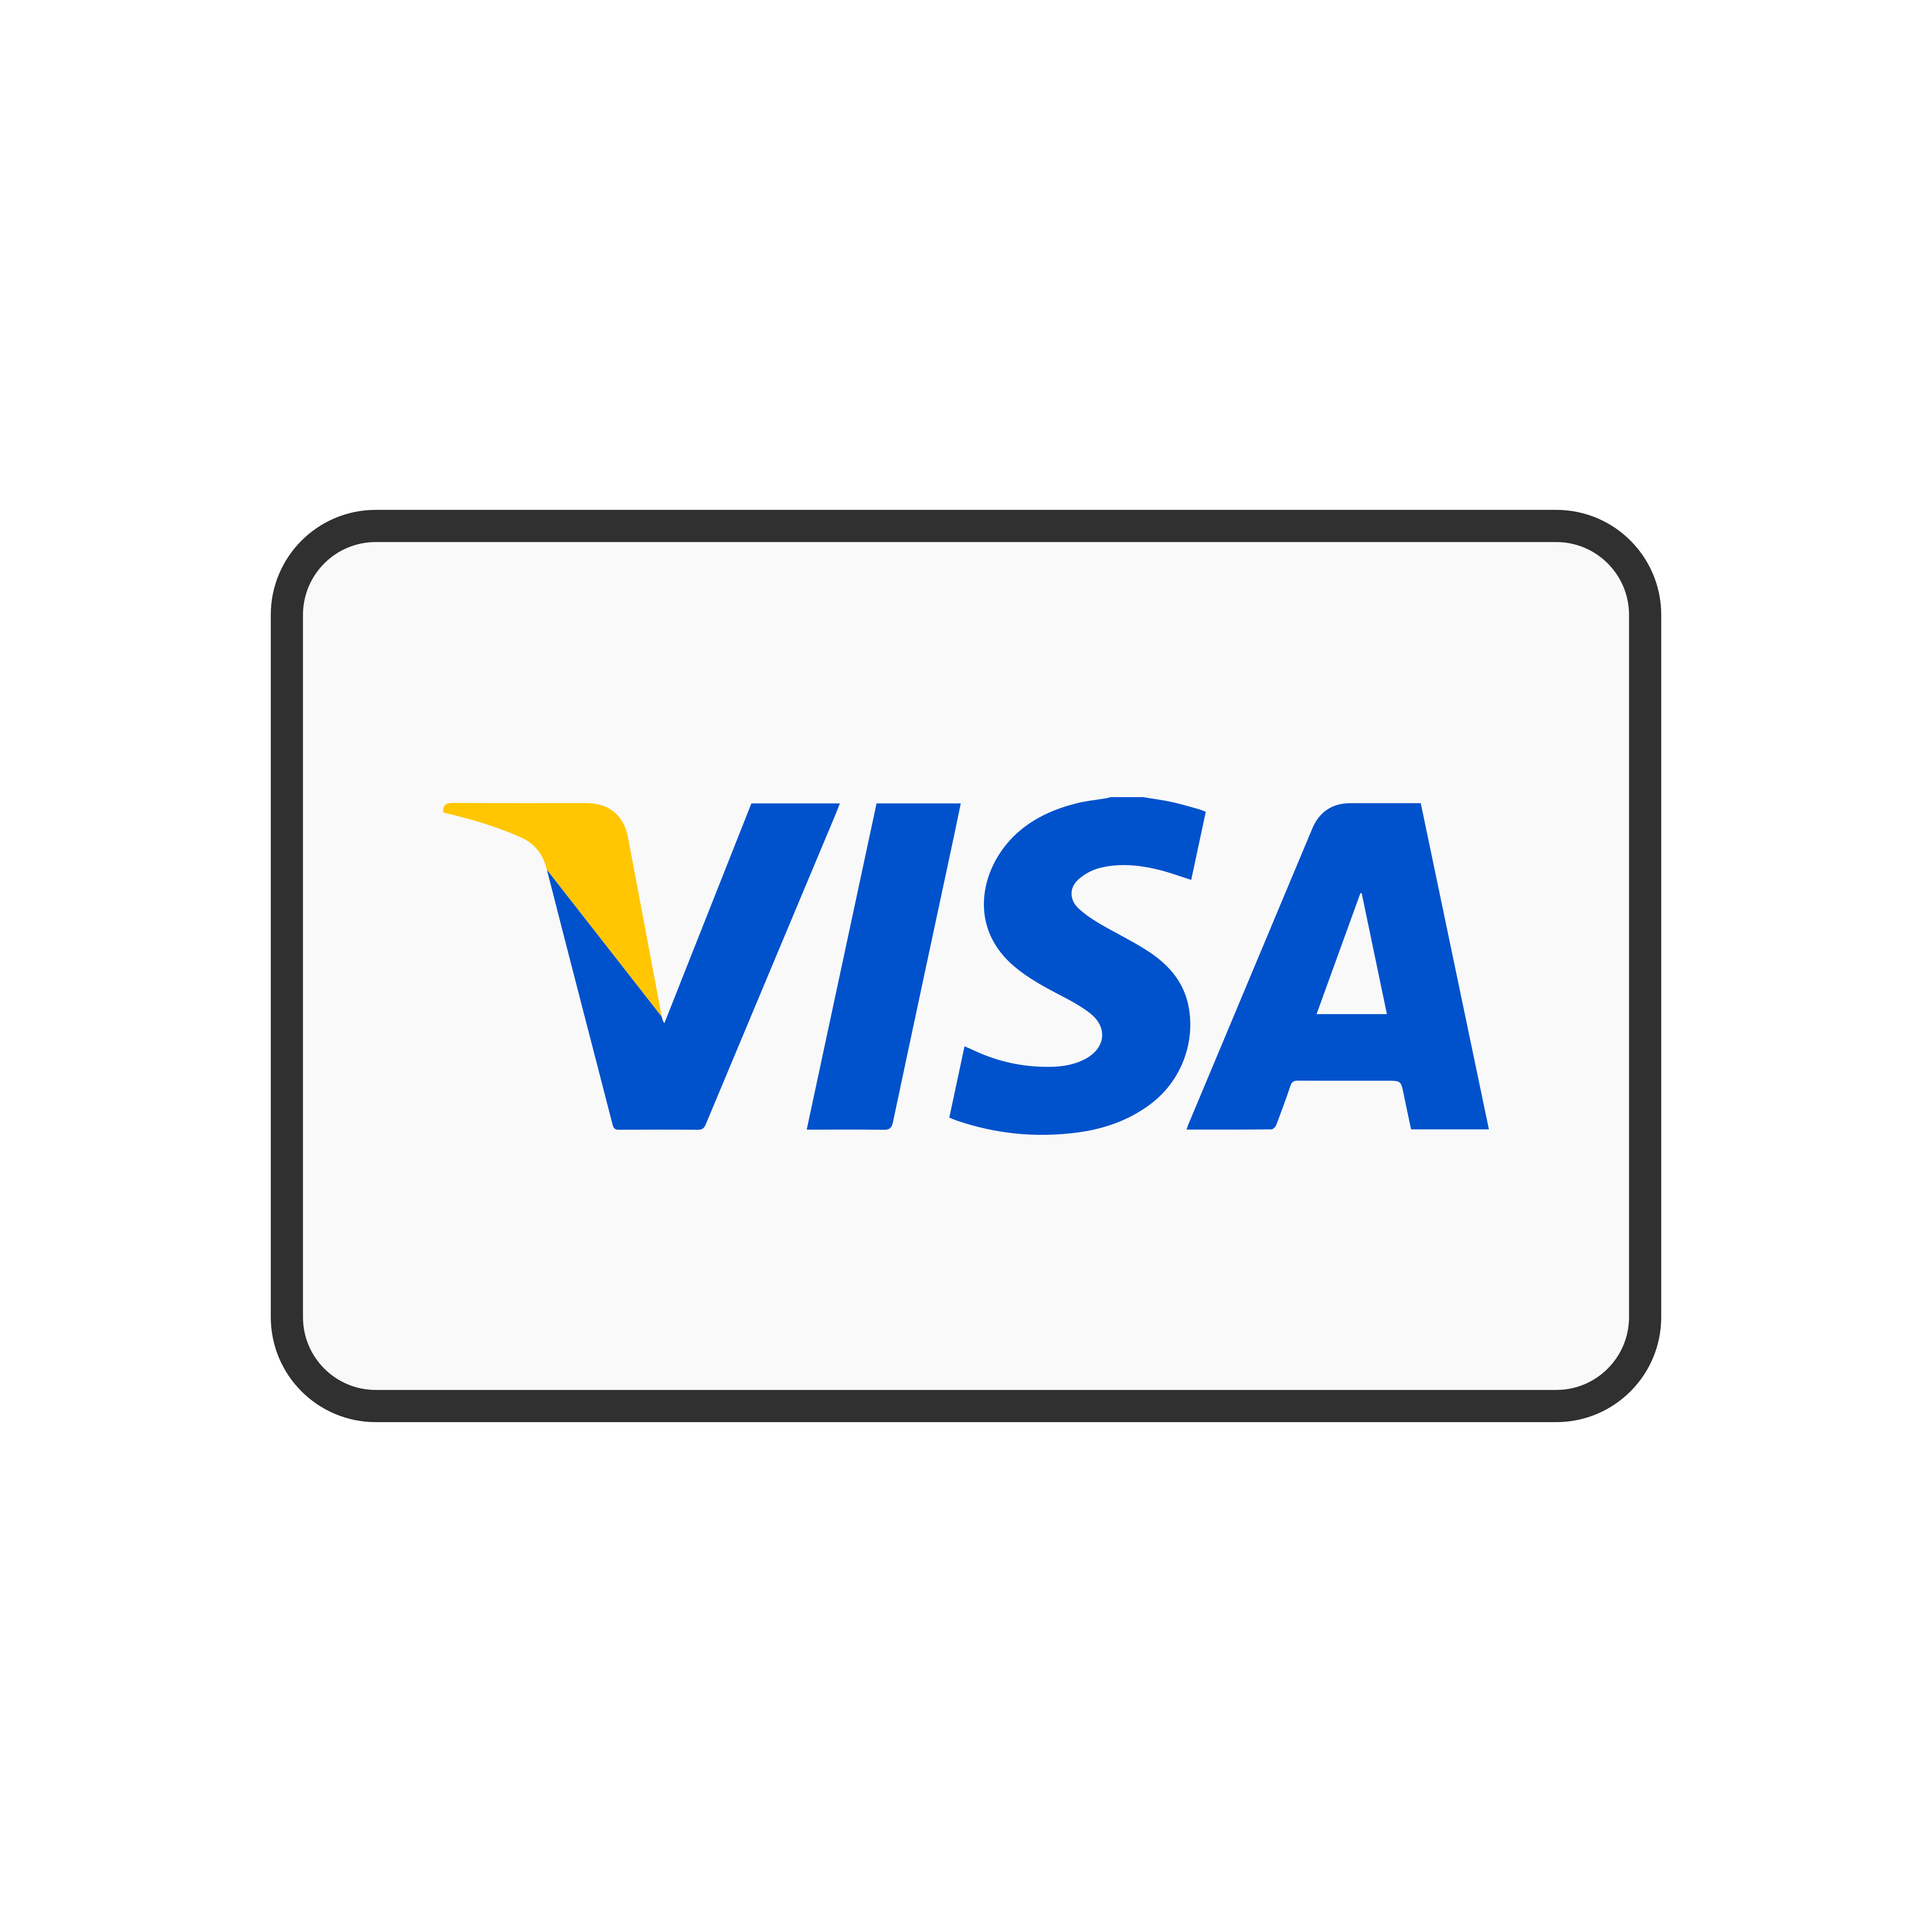 Visa tj. Значок visa. Платежная система visa. Логотип виза. Значок карты виза.